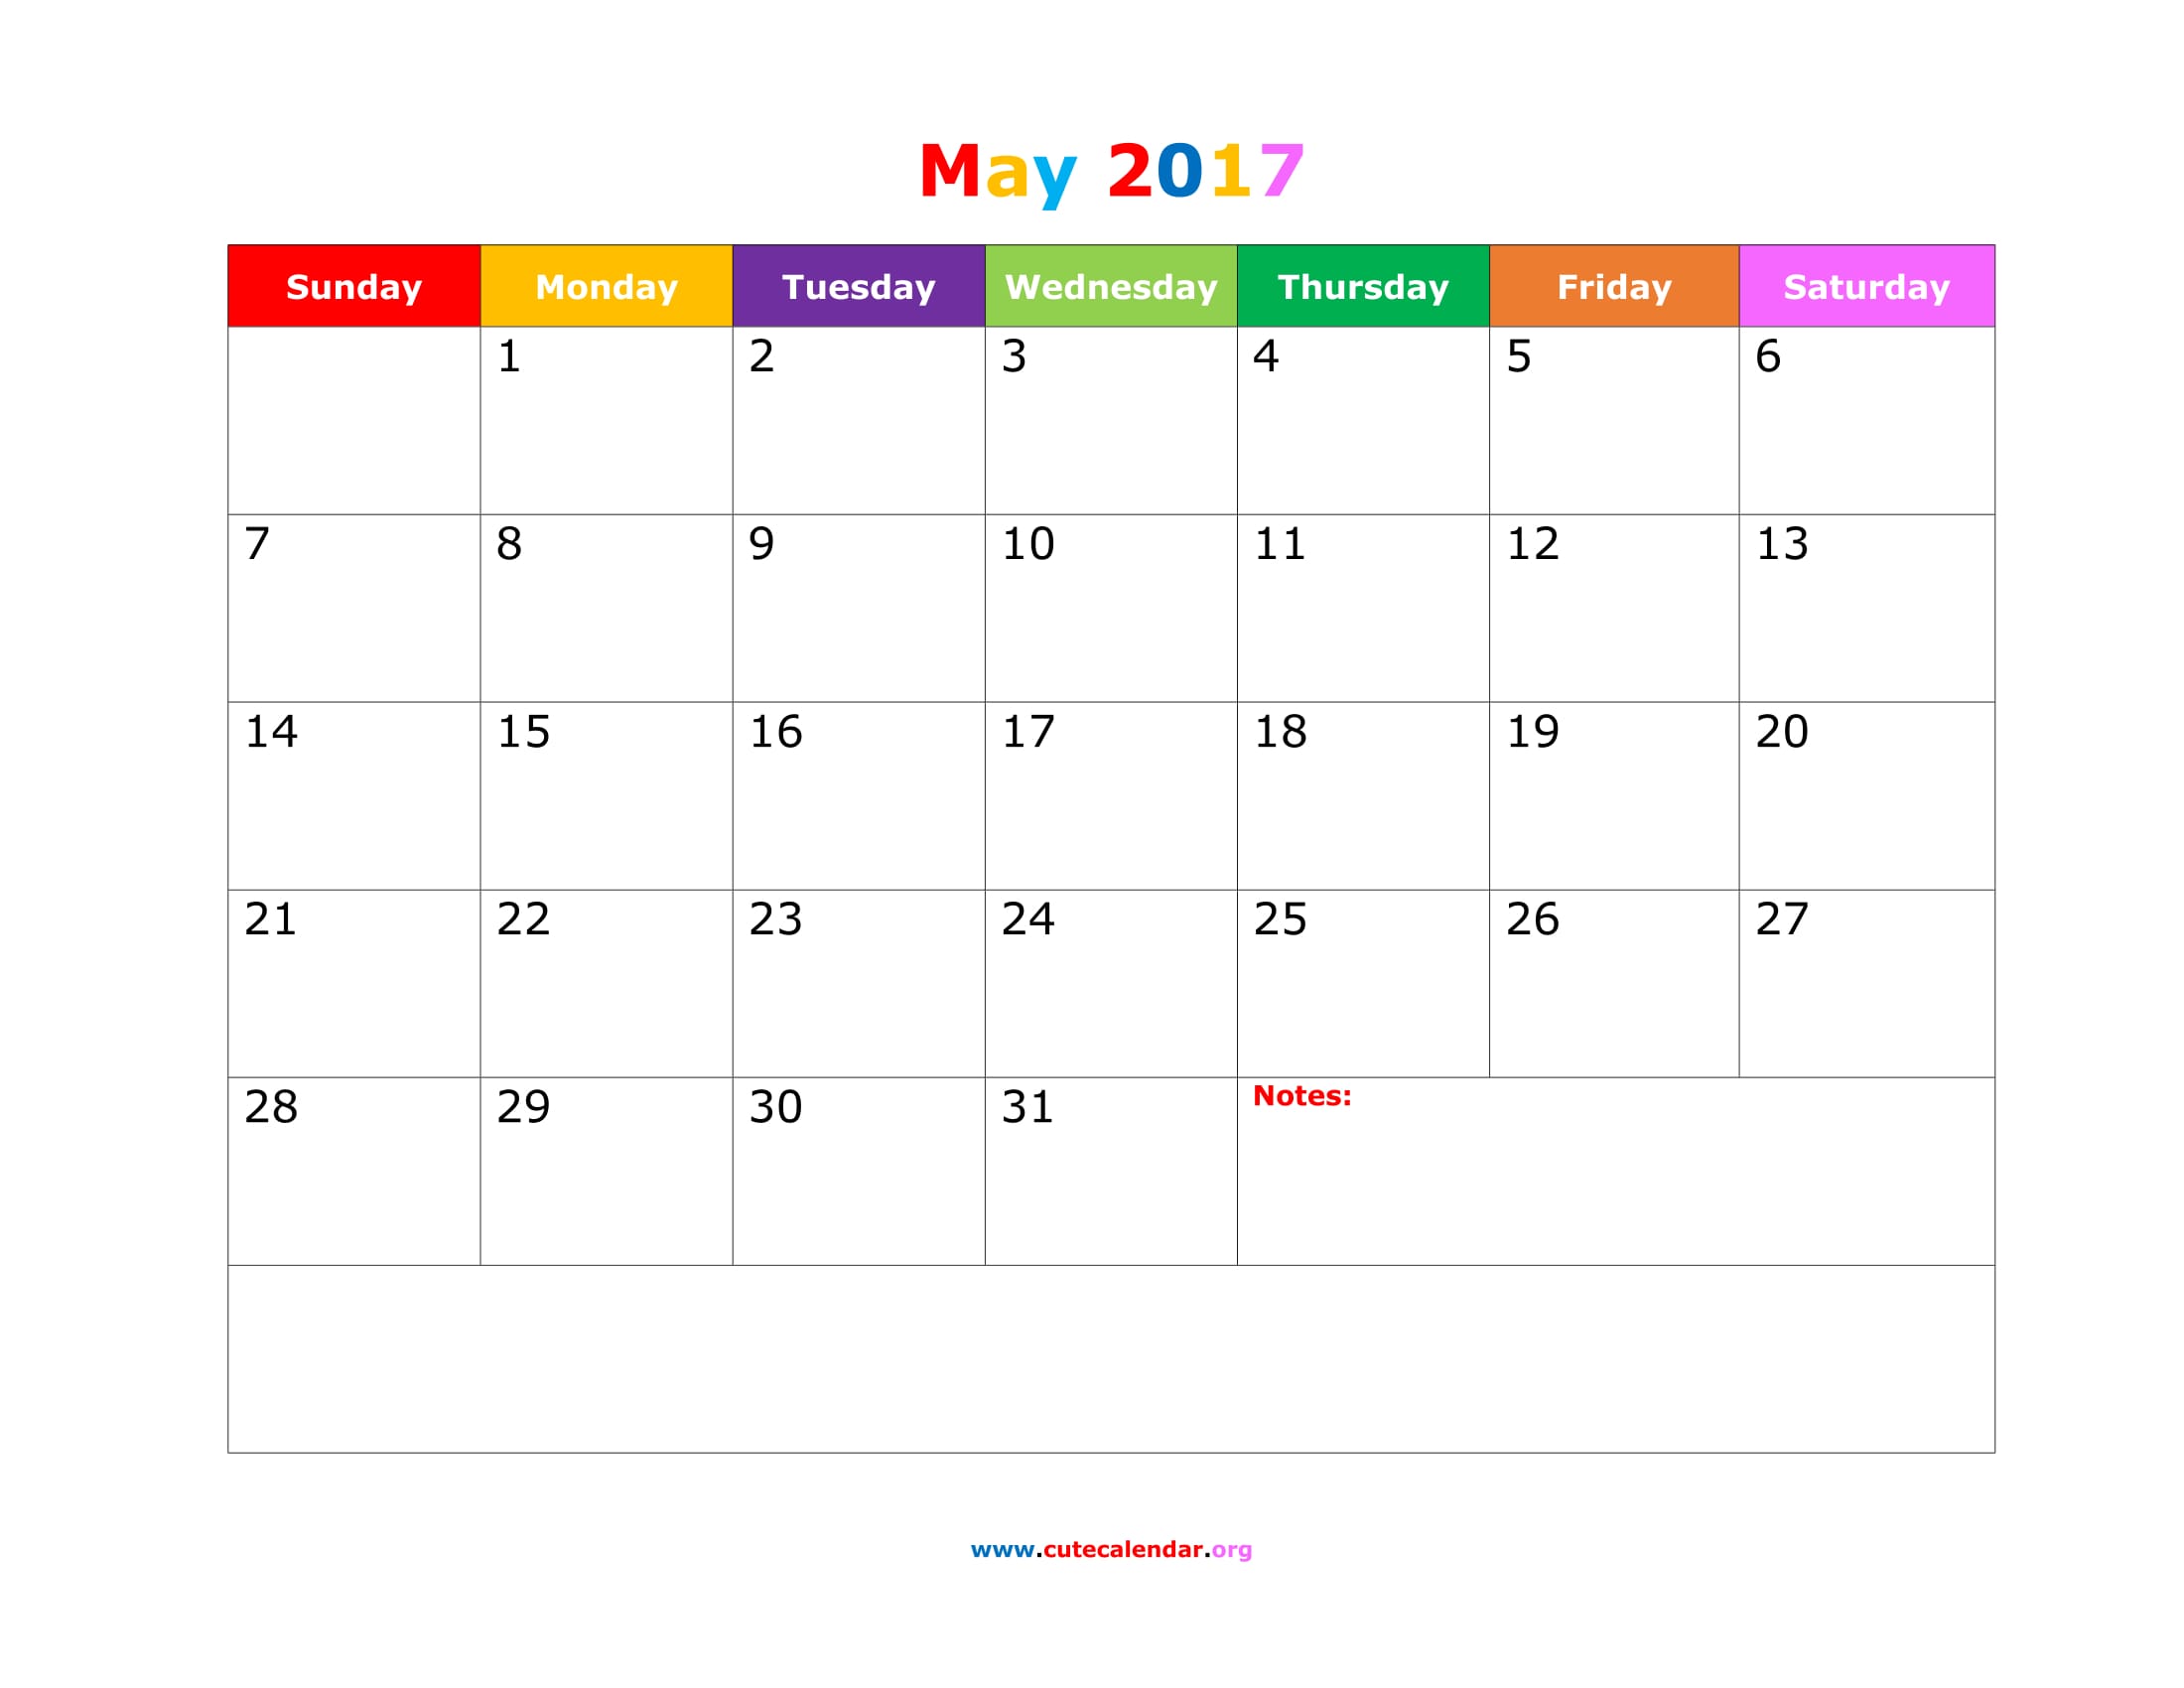 May 2017 Calendar Cute | free calendar 2017